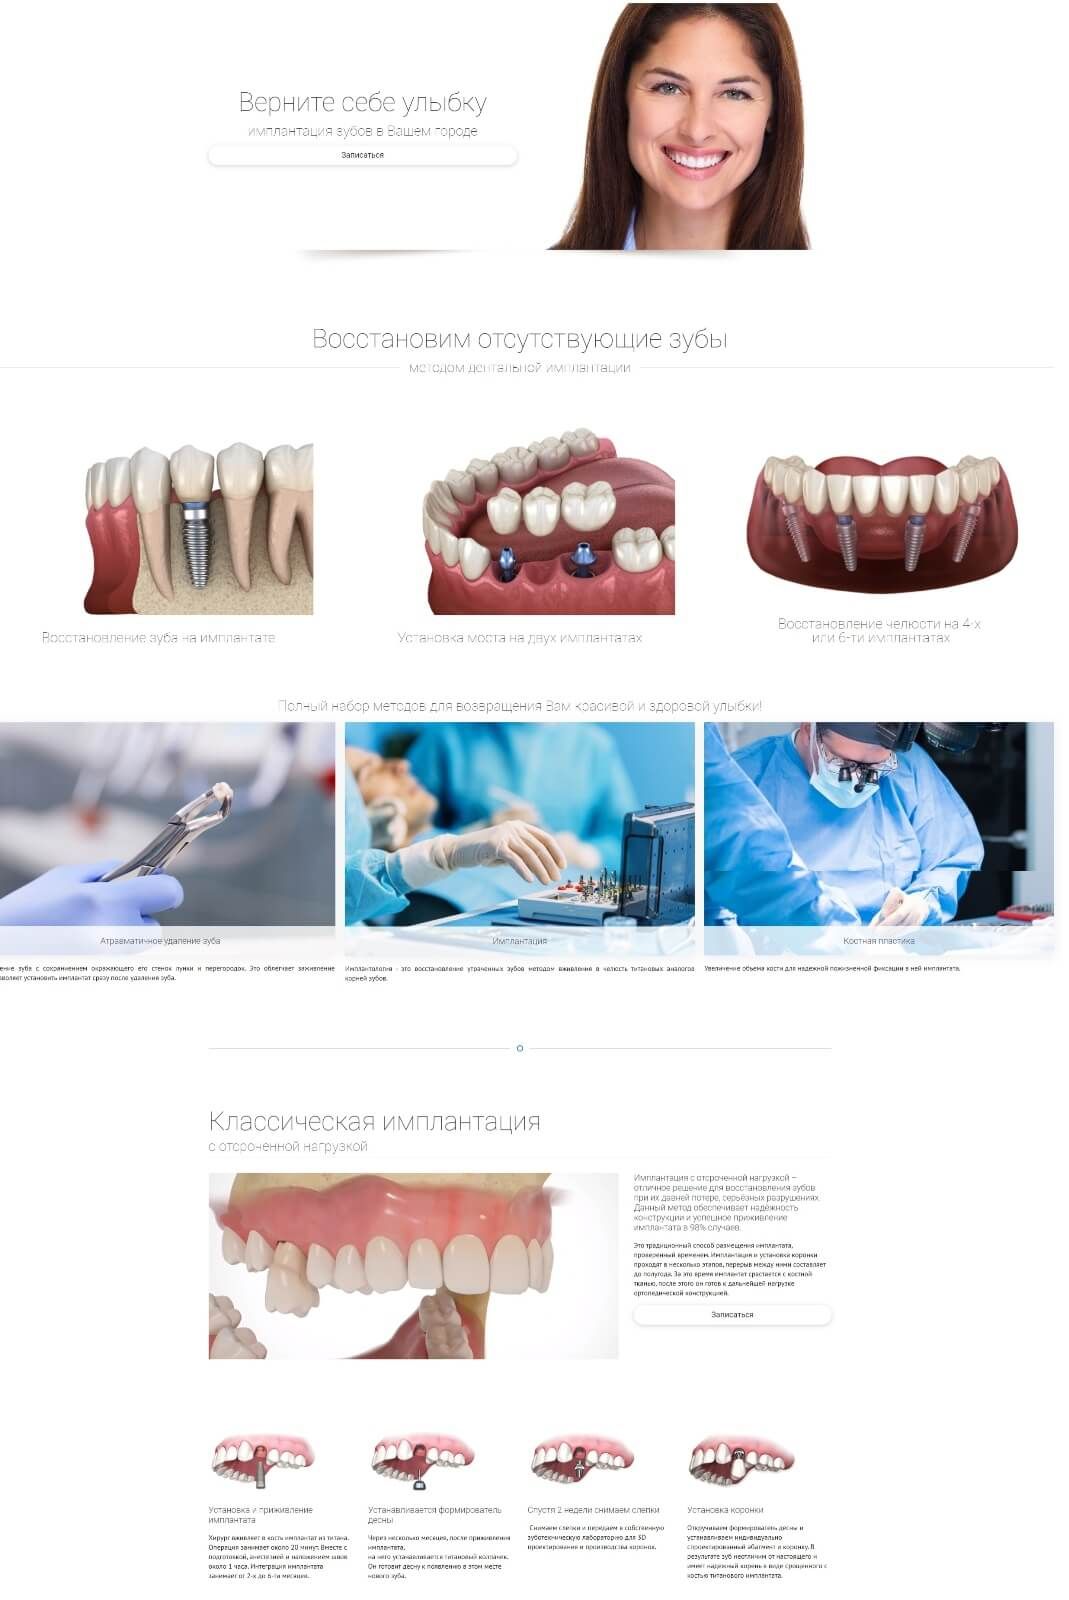 Страница сайта стоматологии об имплантации